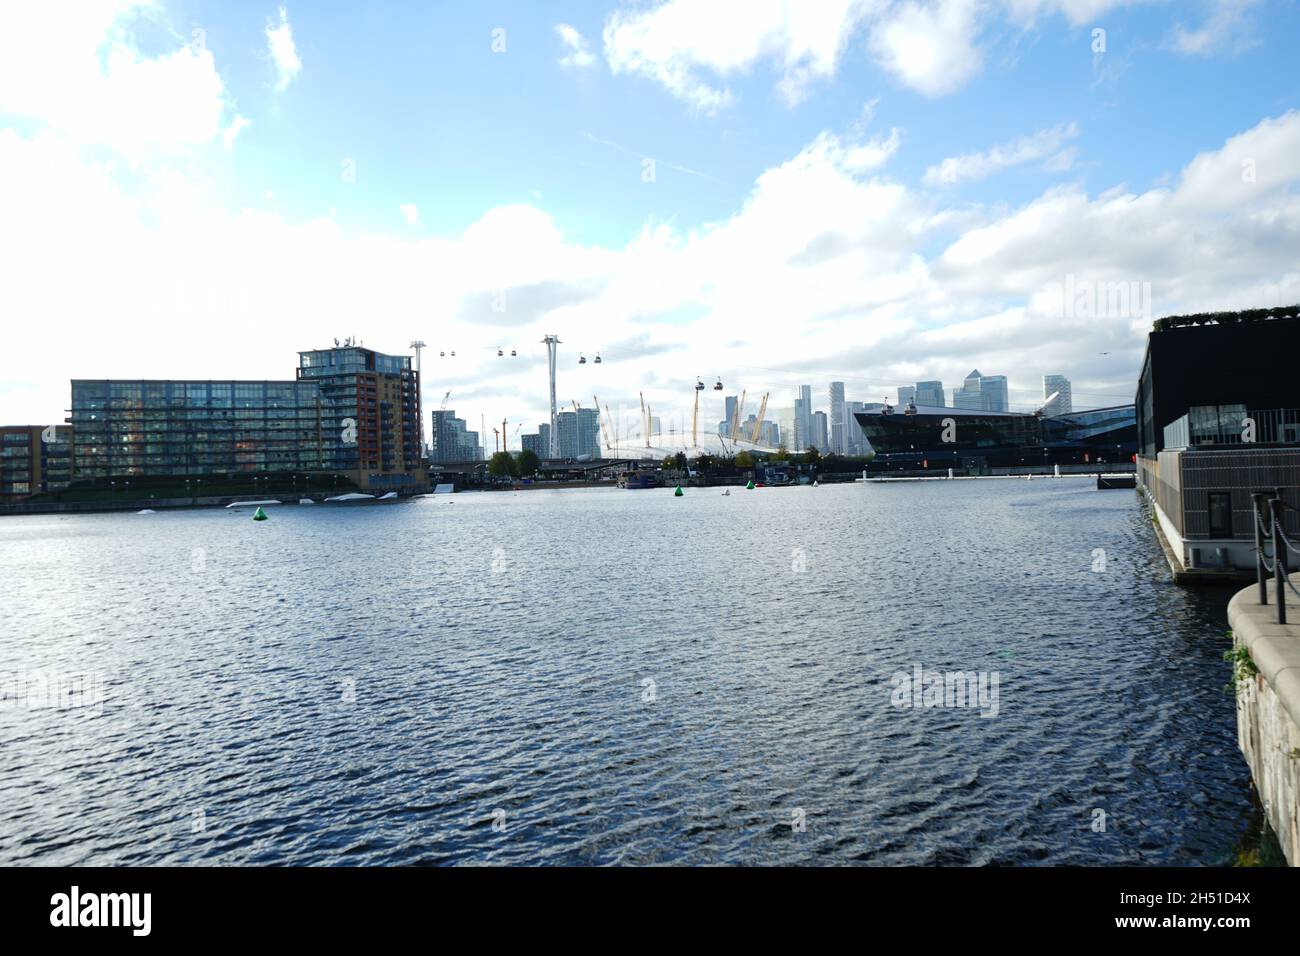 Vue sur la Tamise au centre Excel des Royal Docks de Londres, Angleterre, Royaume-Uni Banque D'Images